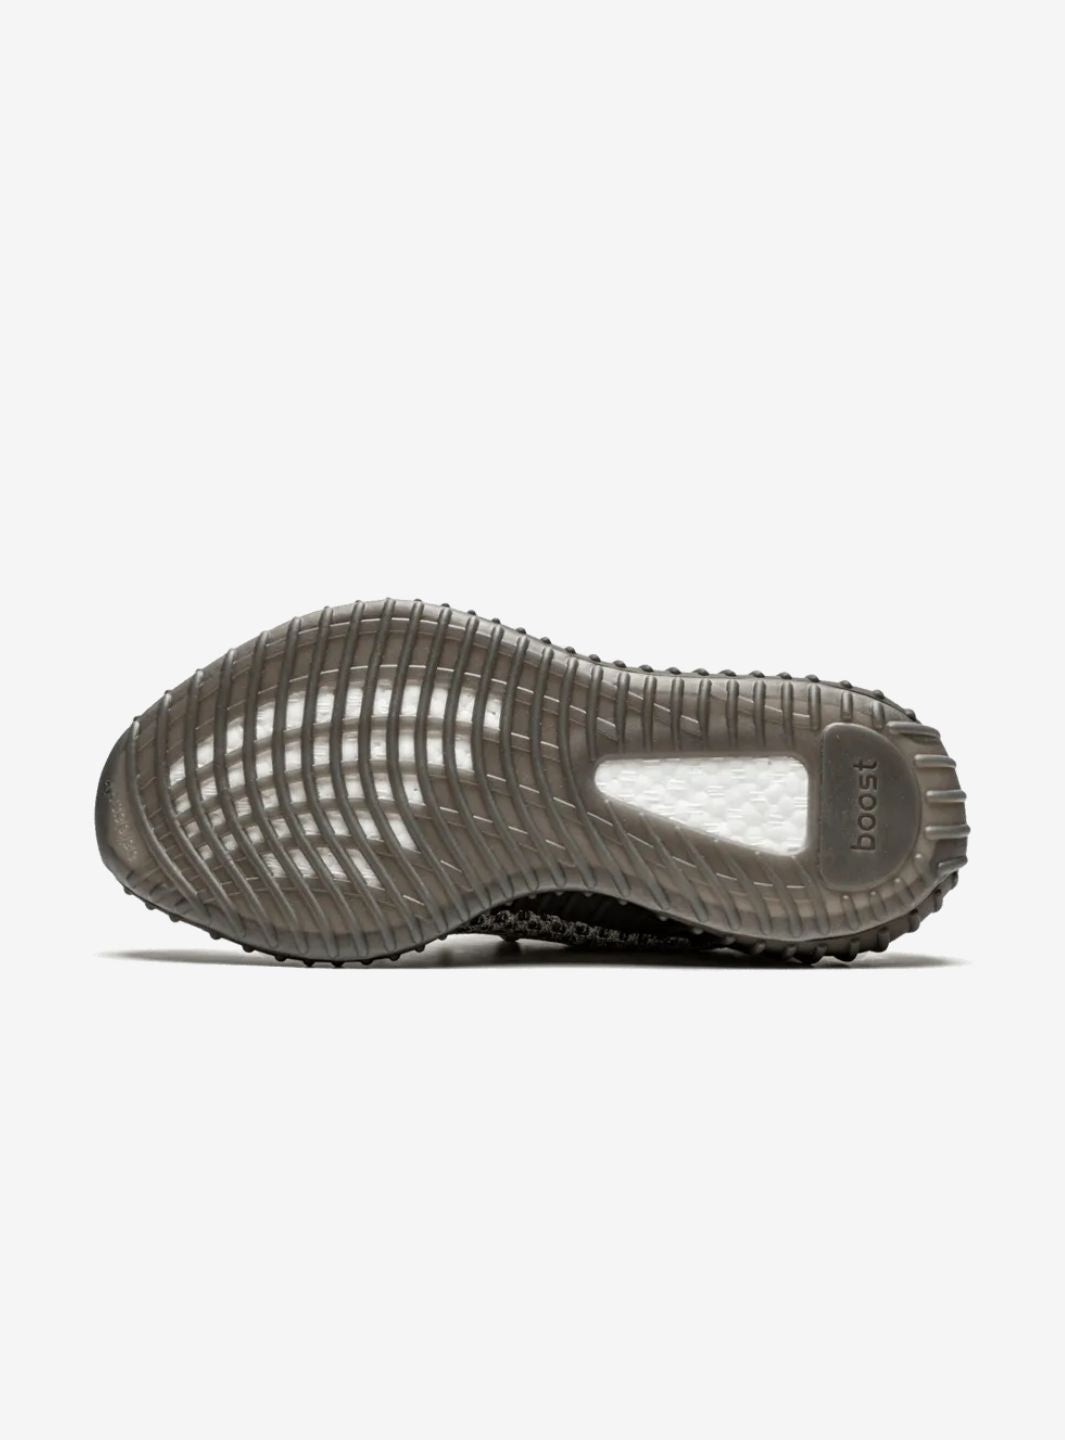 Adidas Yeezy Boost 350 V2 Ash Stone - GW0089 | ResellZone